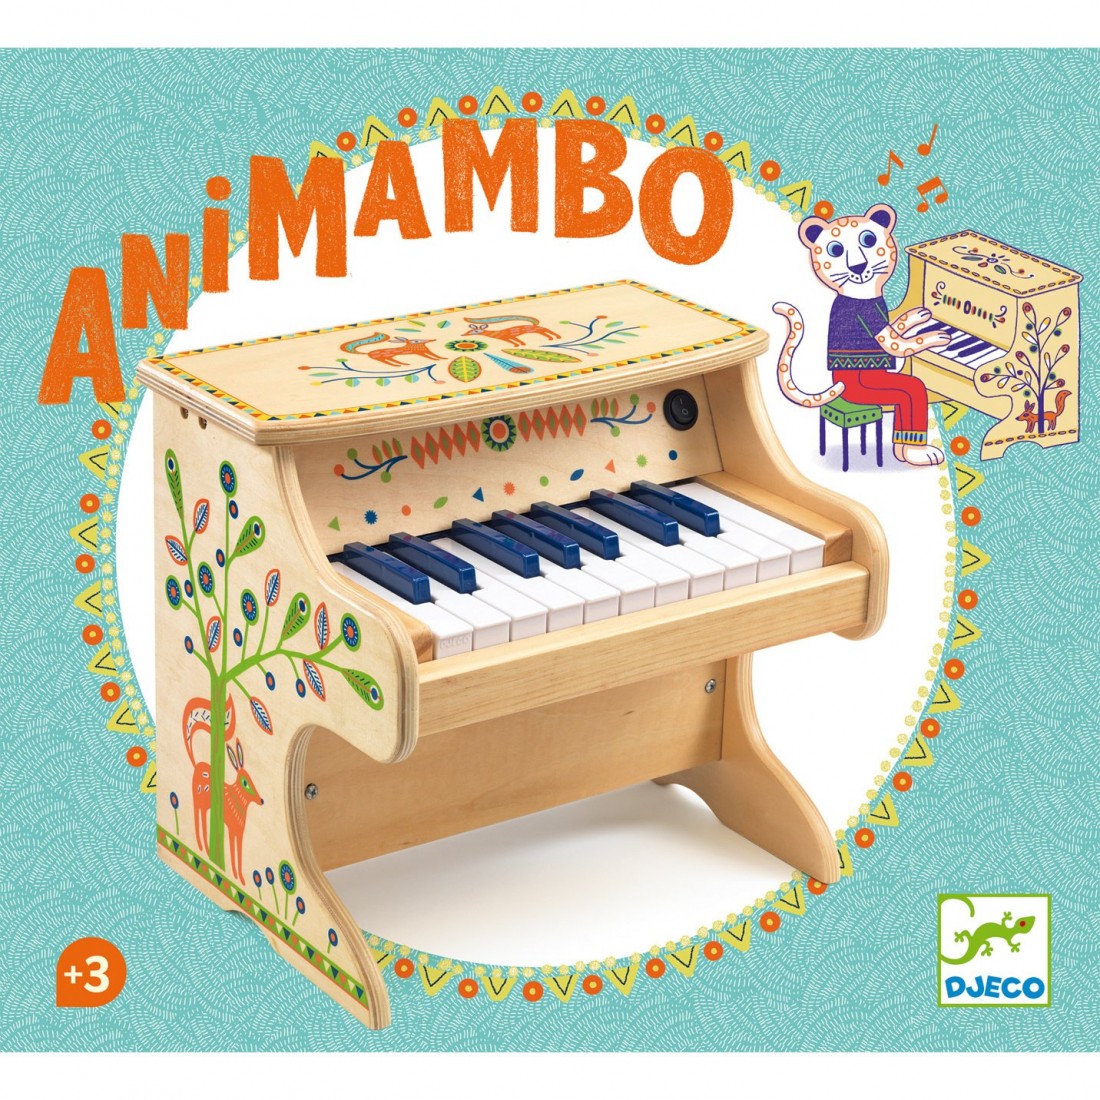 Piano en bois pour enfant